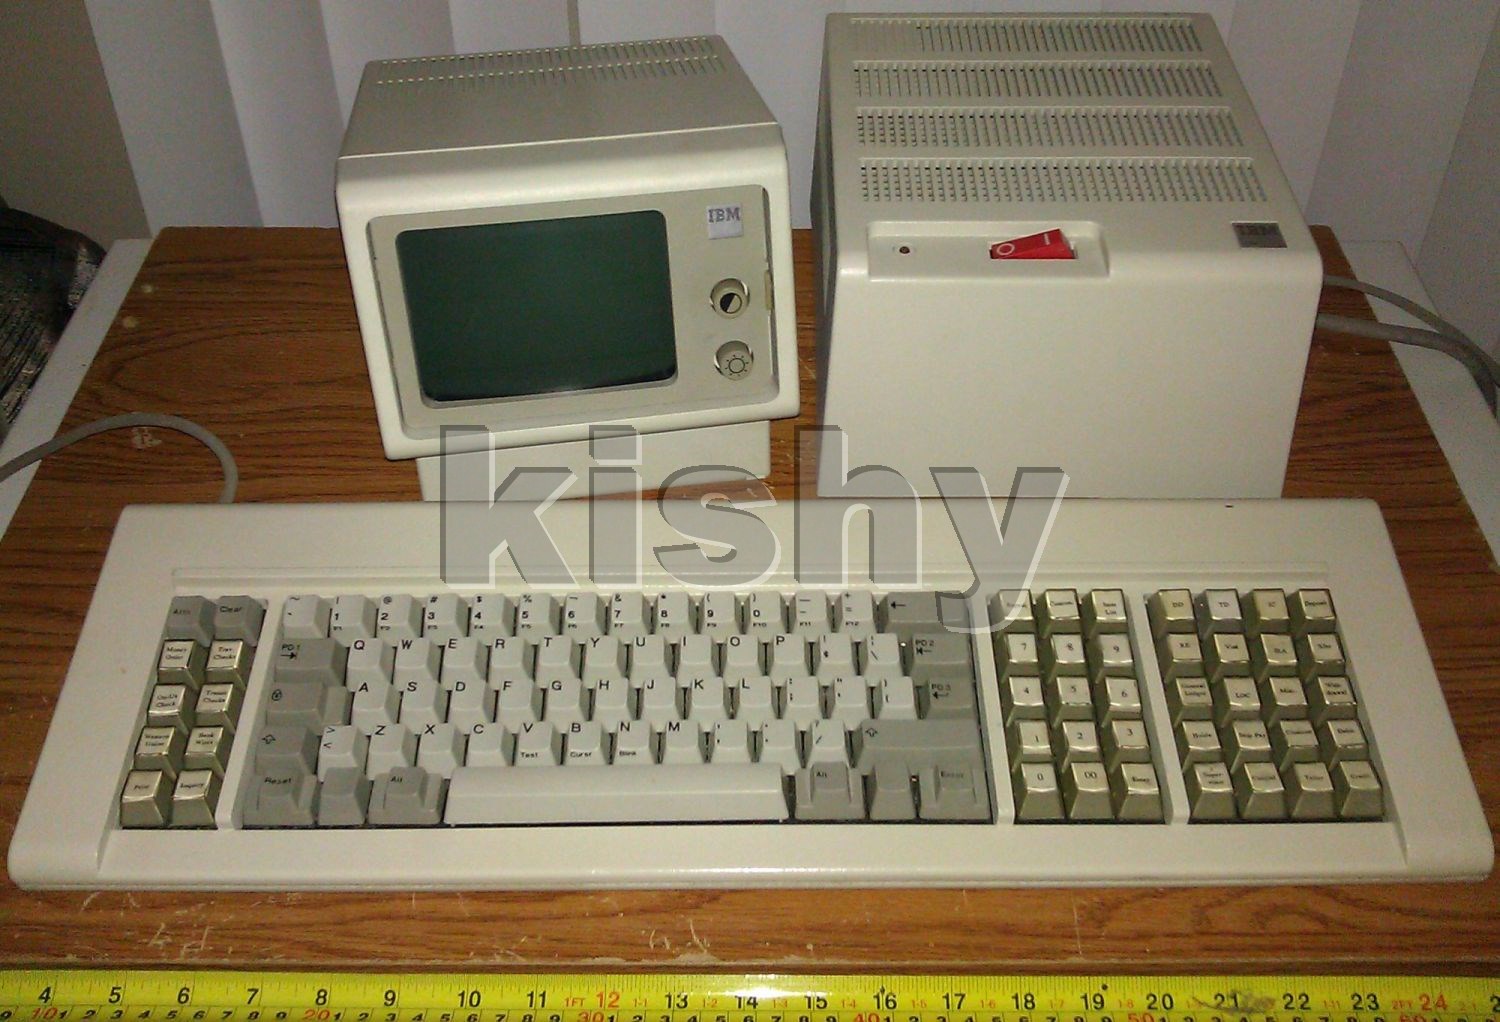 IBM 4704 with 107-key keyboard